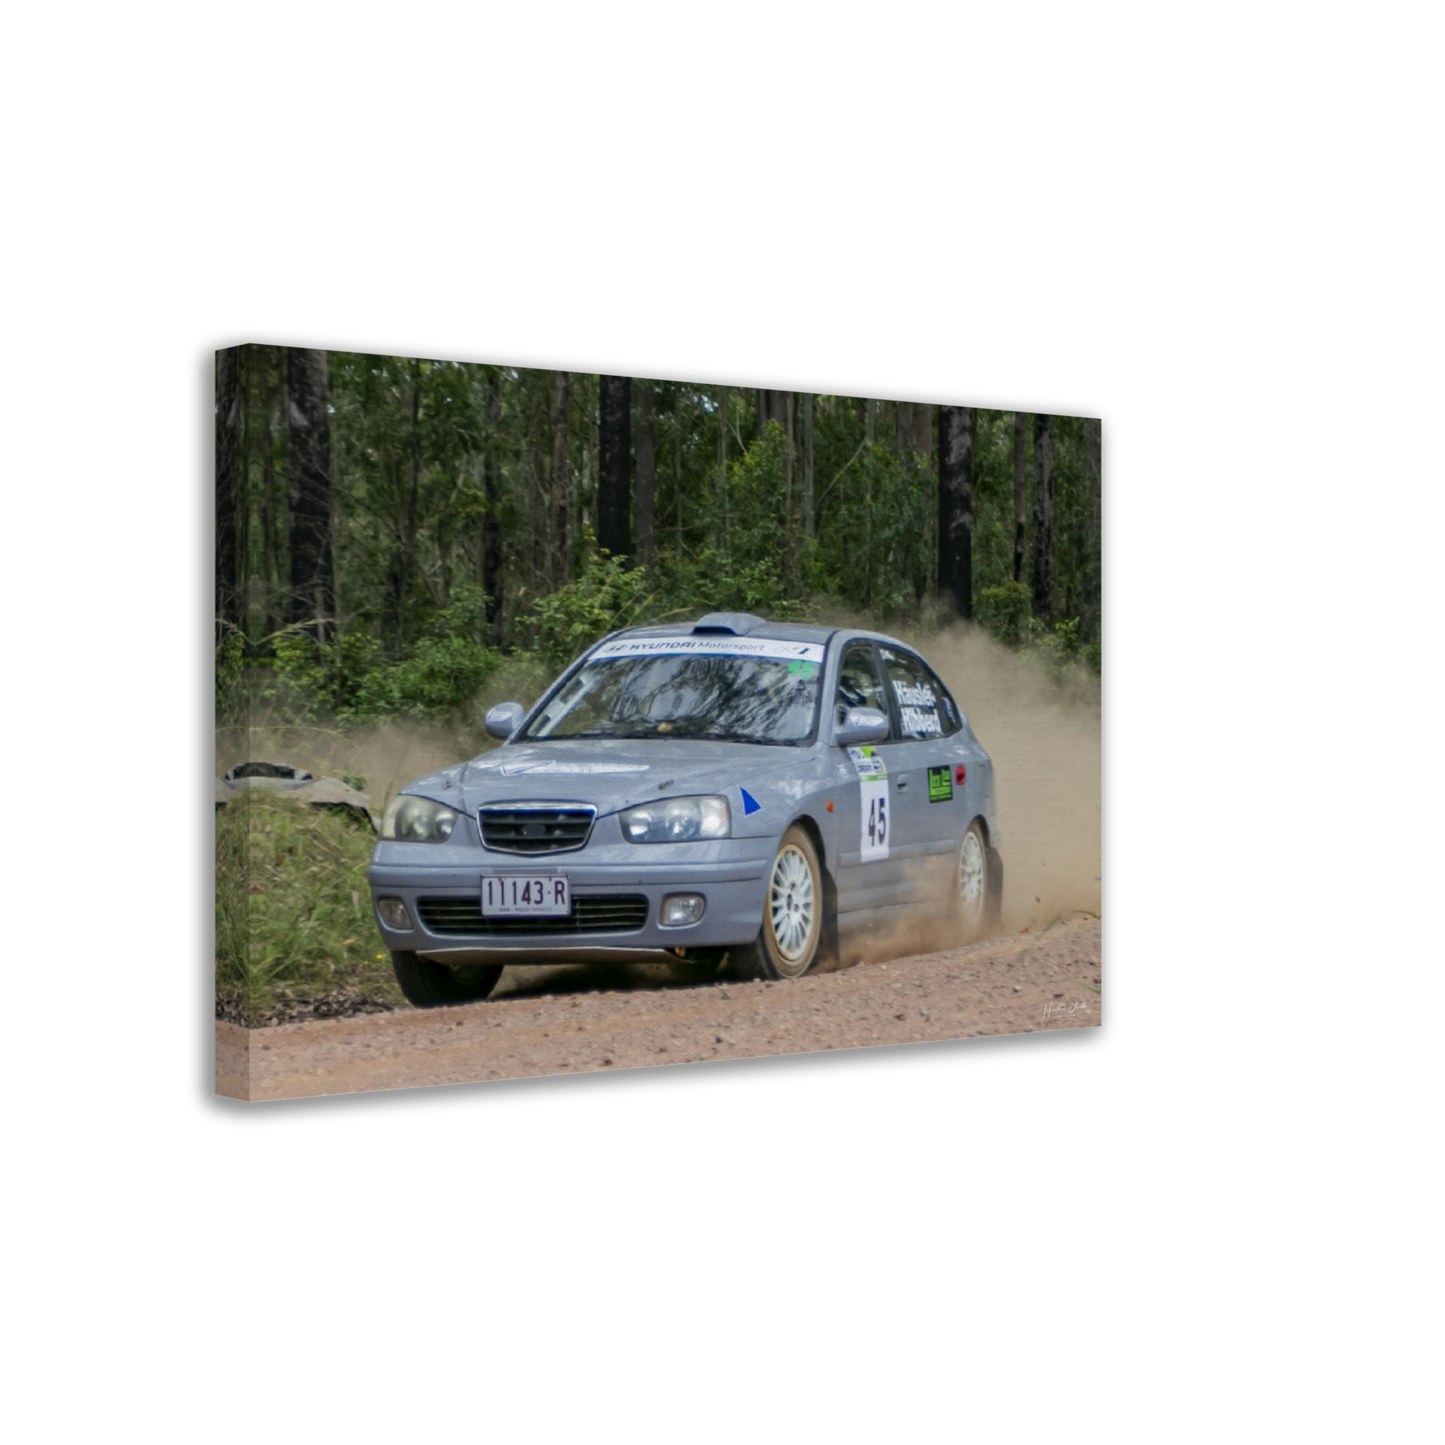 Amsag Taree Rally - Car 45 - Brian Hausler / Paul Hibberd